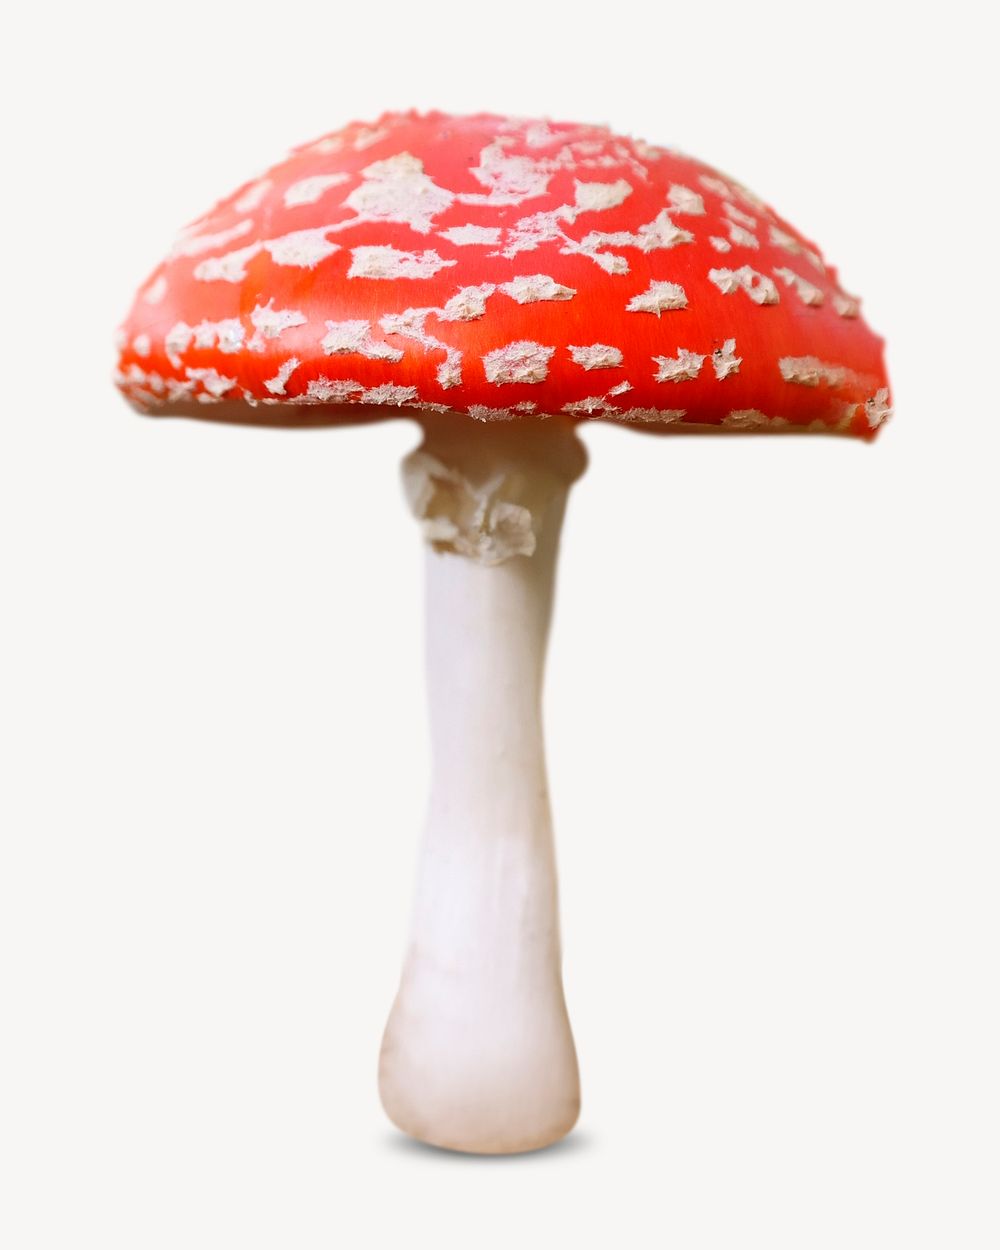 Poisonous mushroom image on white background